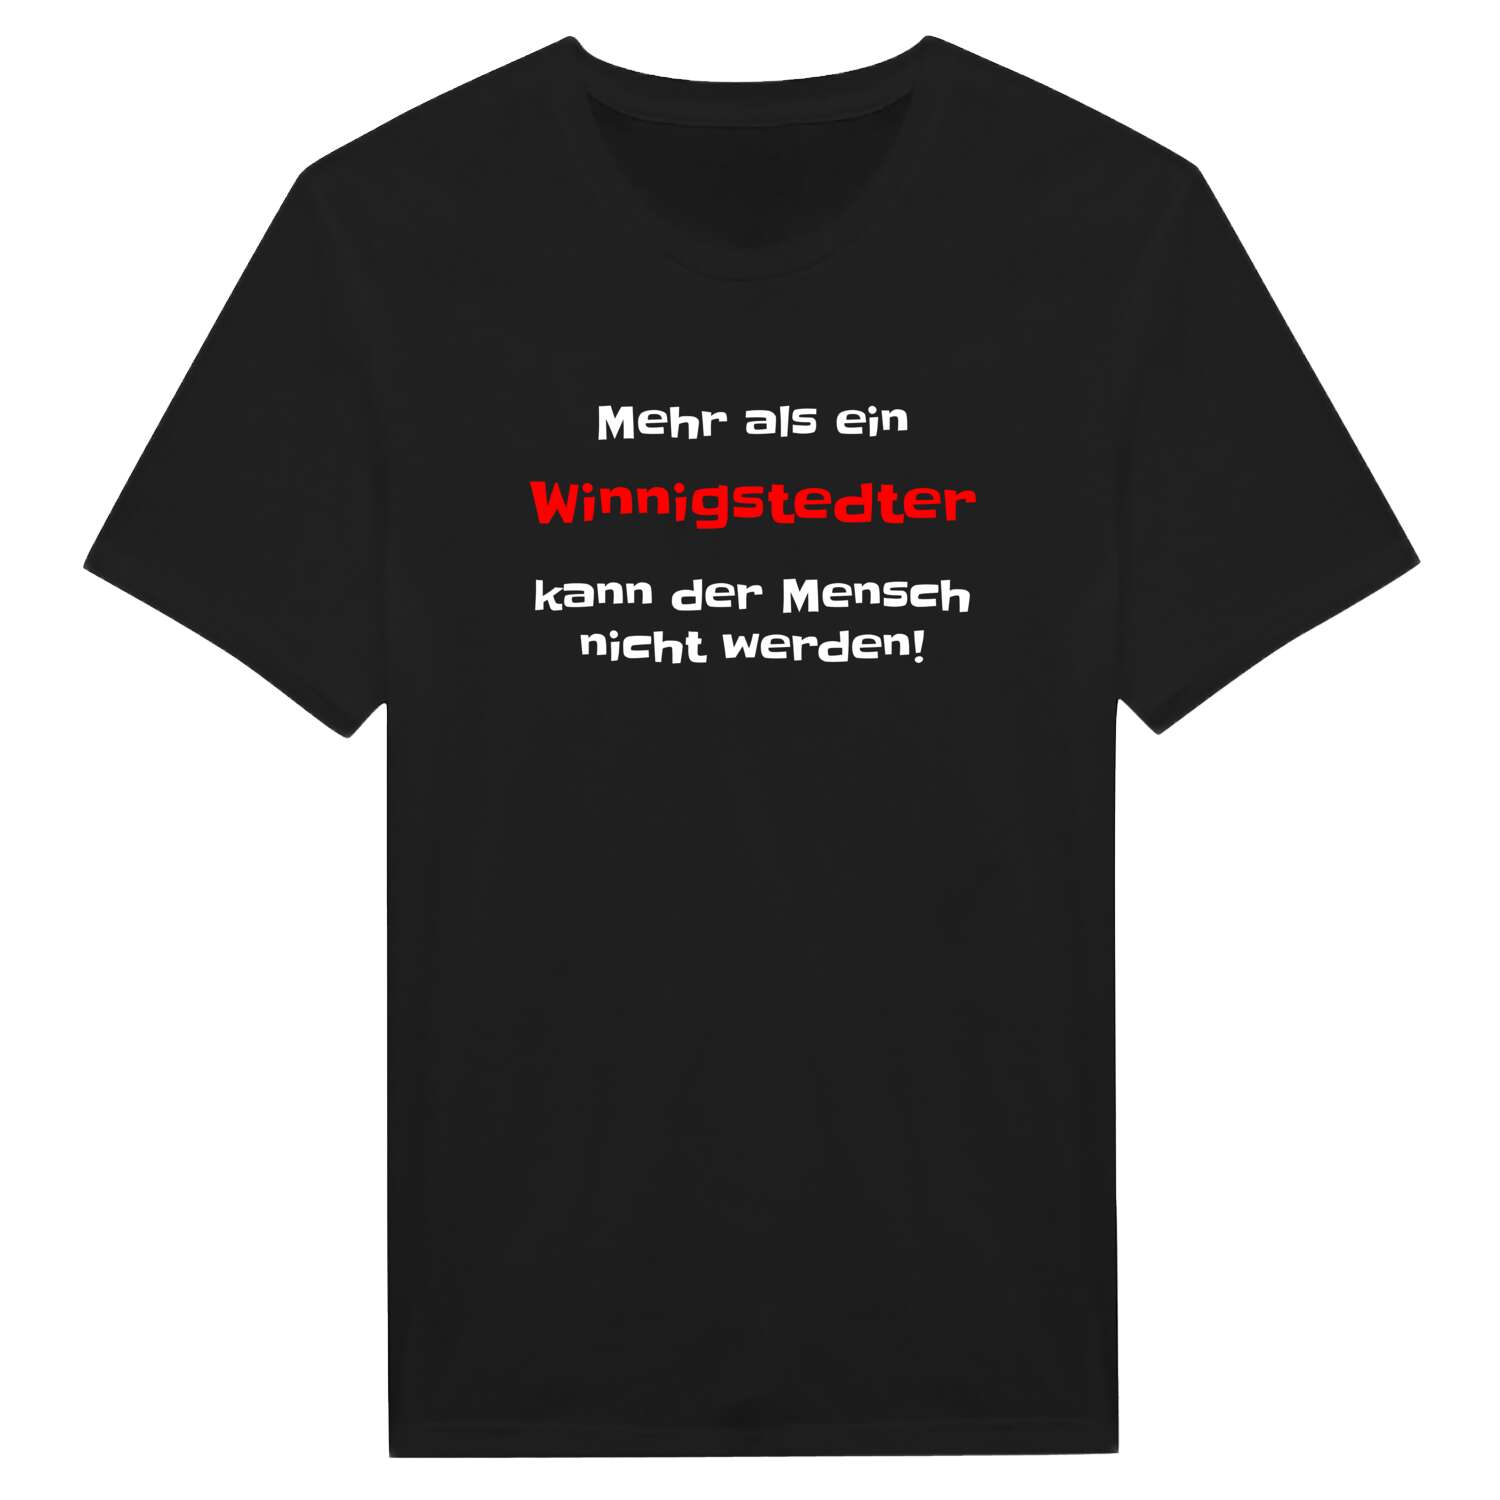 Winnigstedt T-Shirt »Mehr als ein«